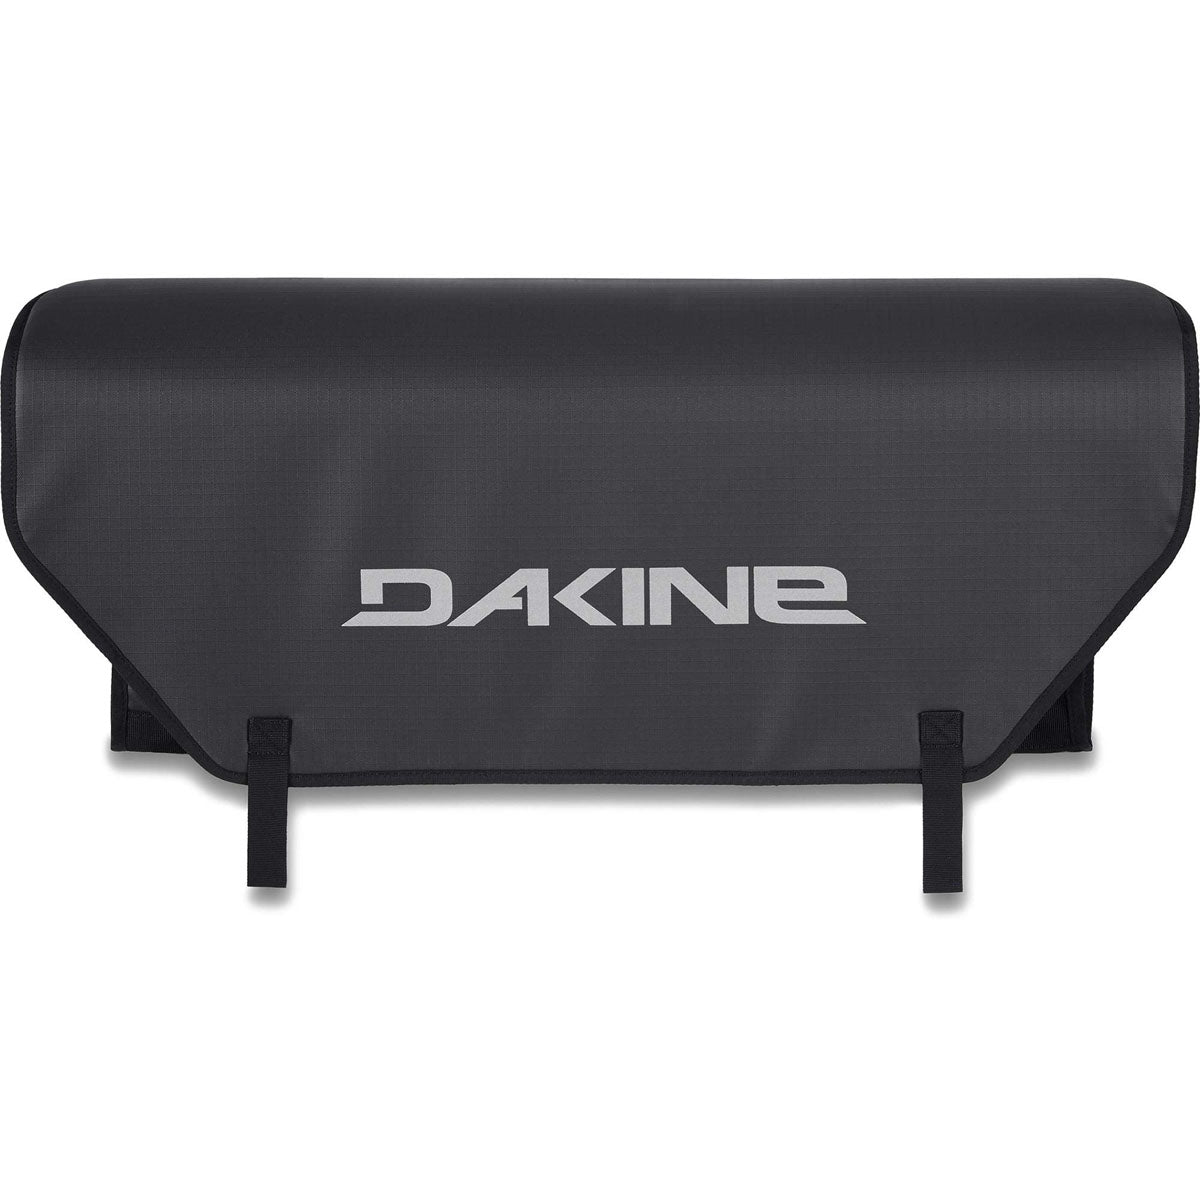 Dakine Pickup Pad Halfside - ExtremeSupply.com